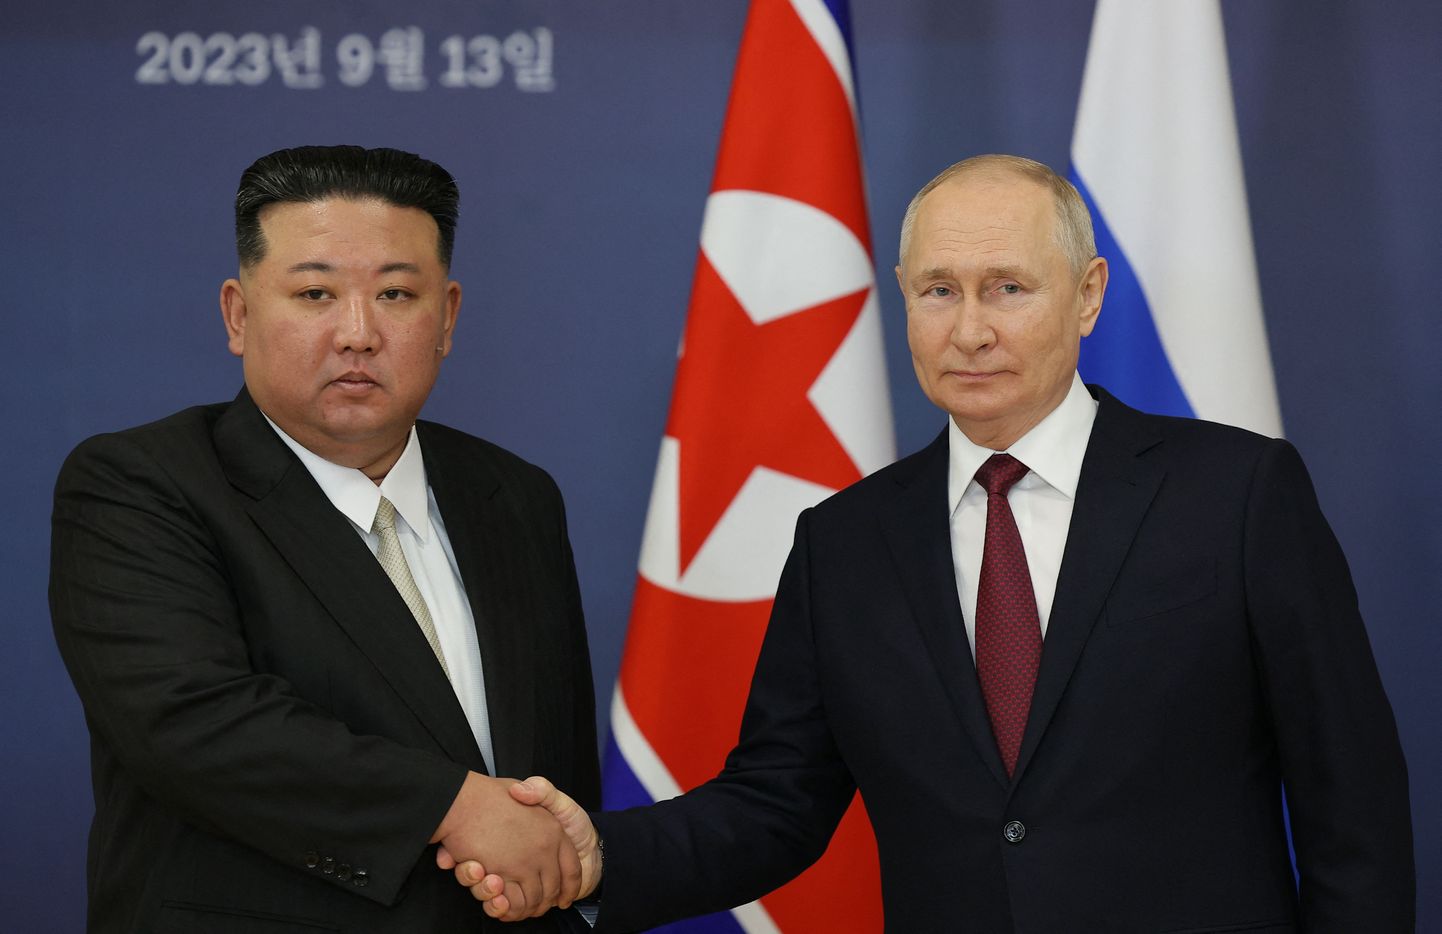 Põhja-Korea liider Kim Jong-un ja Venemaa riigipea Vladimir Putin mullu septembris Vostotšnõi kosmodroomil.